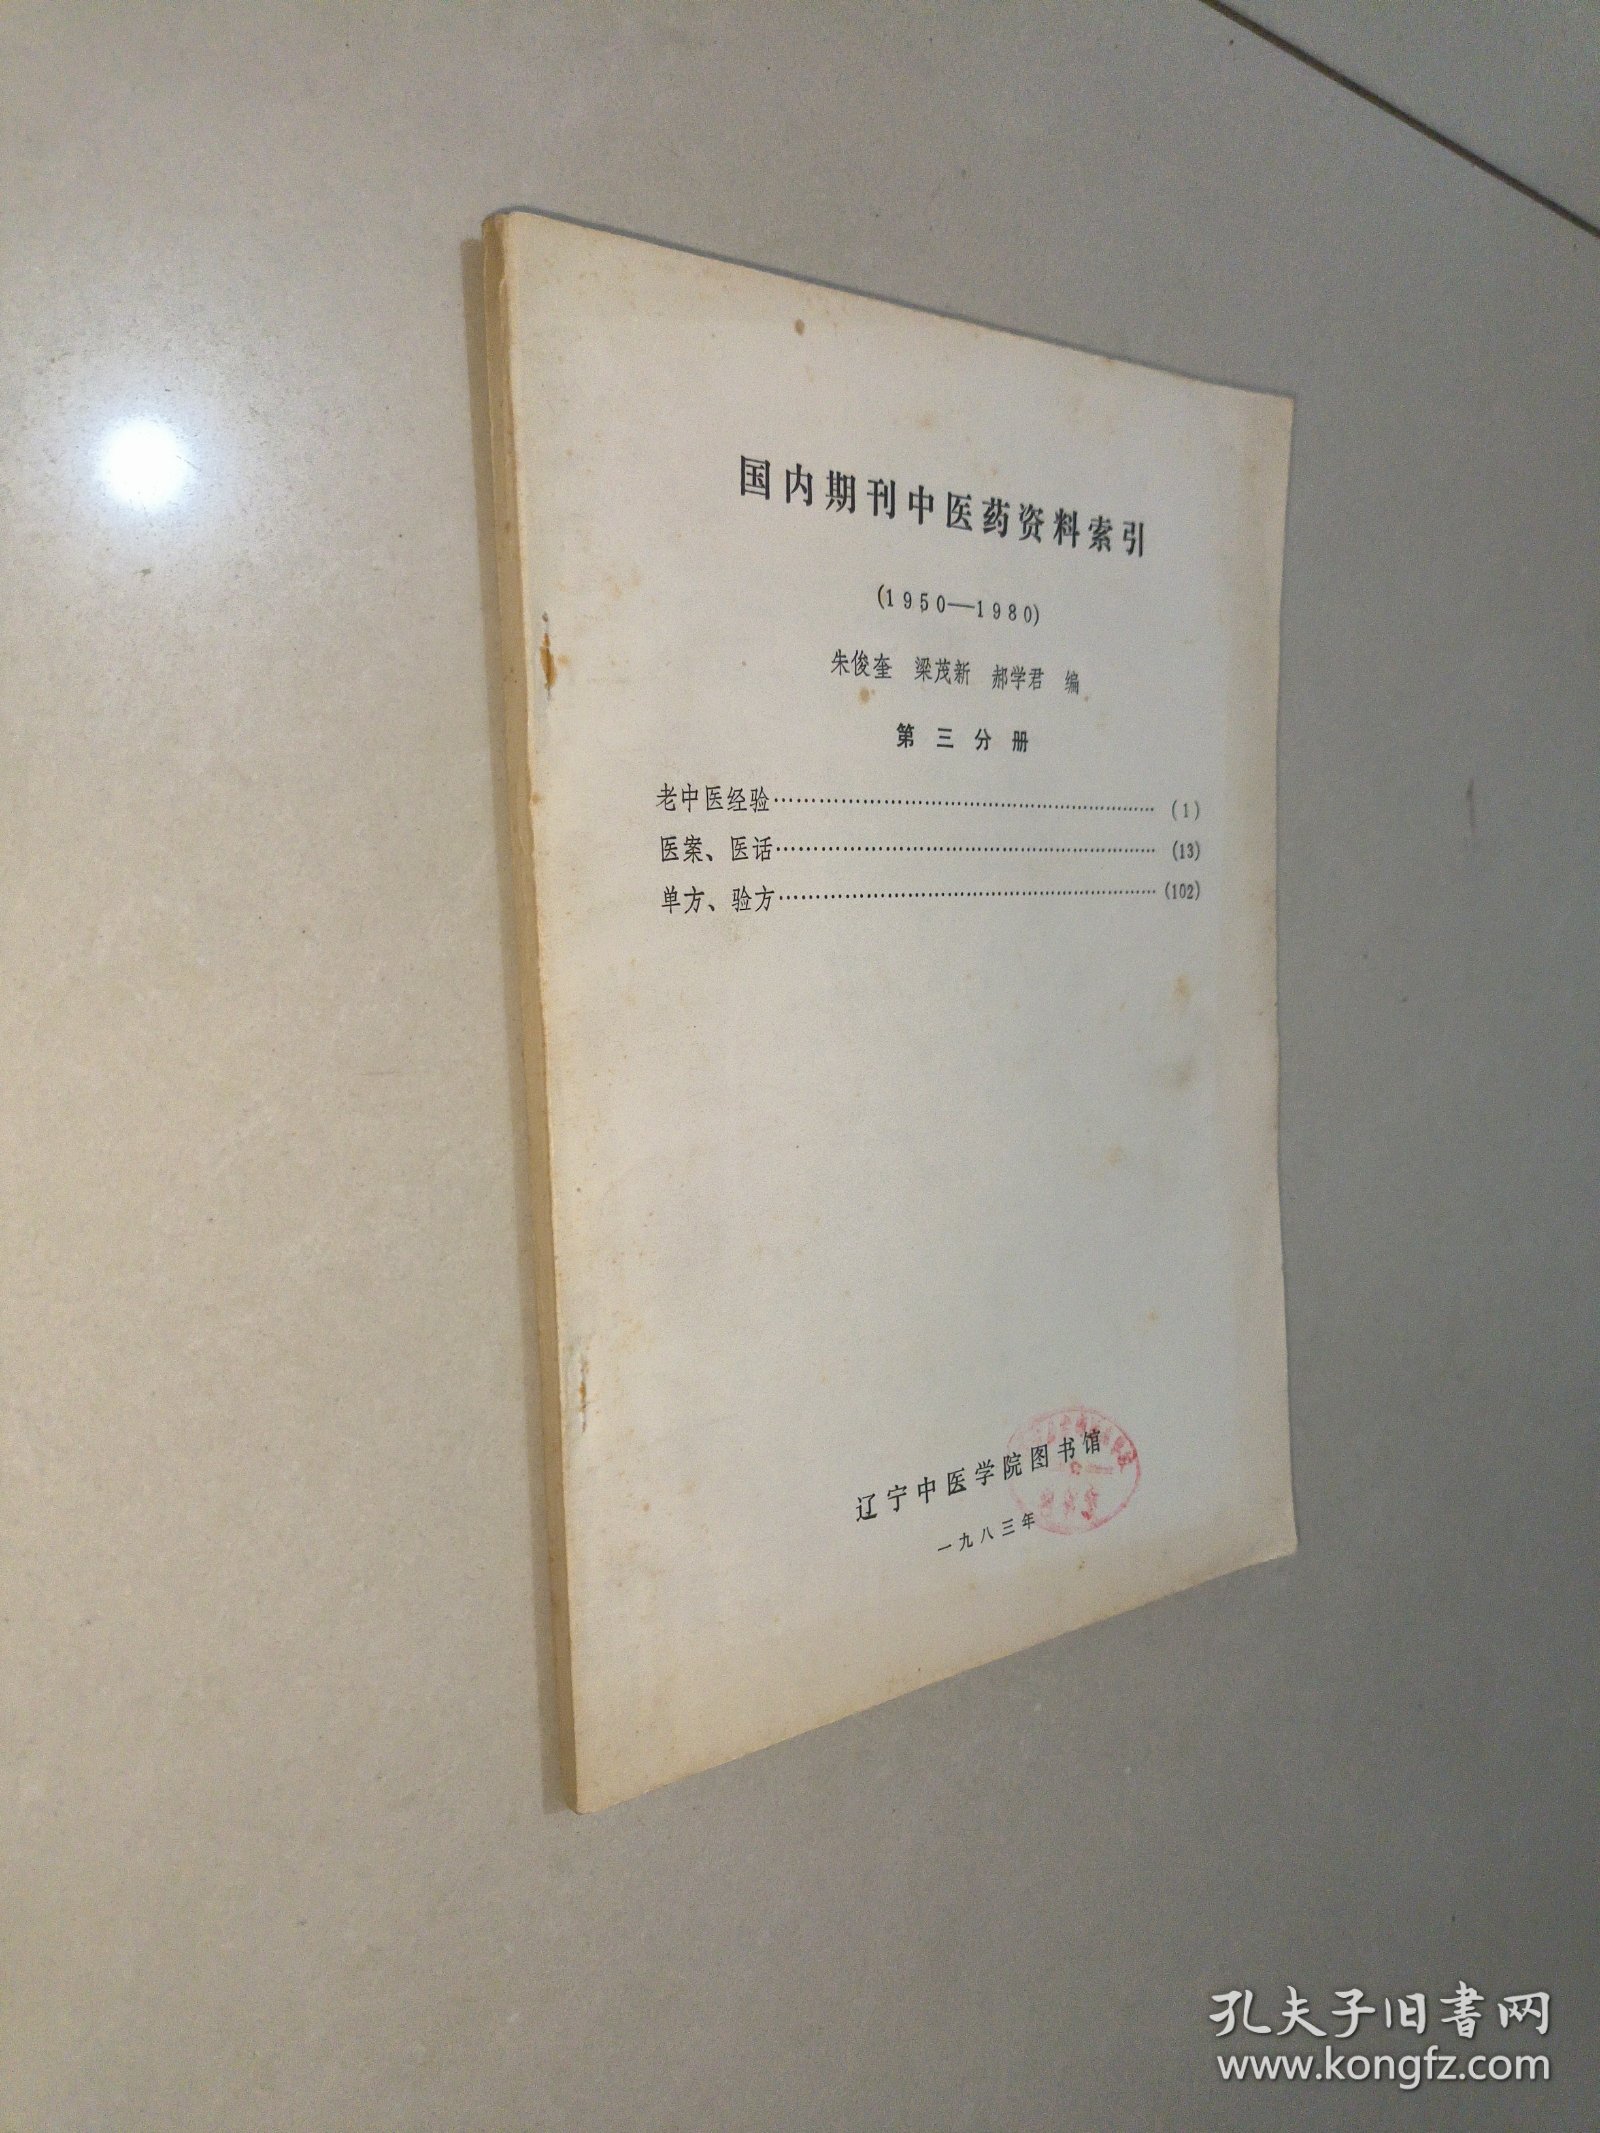 国内期刊中医药资料索引（1950一1980）第三分册